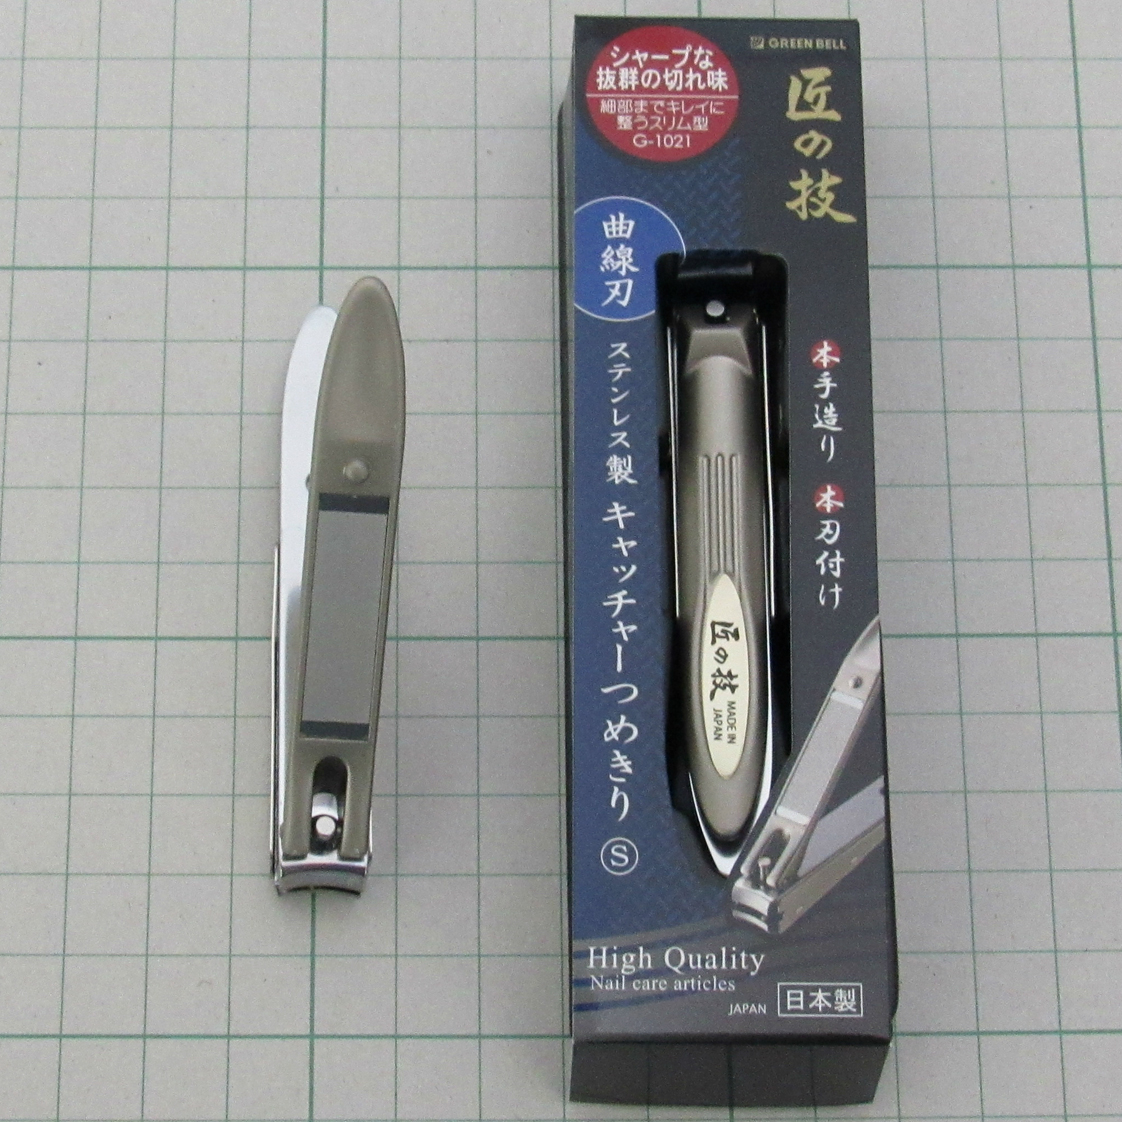 ワールドナイフショップ 銀座 菊藤 - 理容製品・鋏類